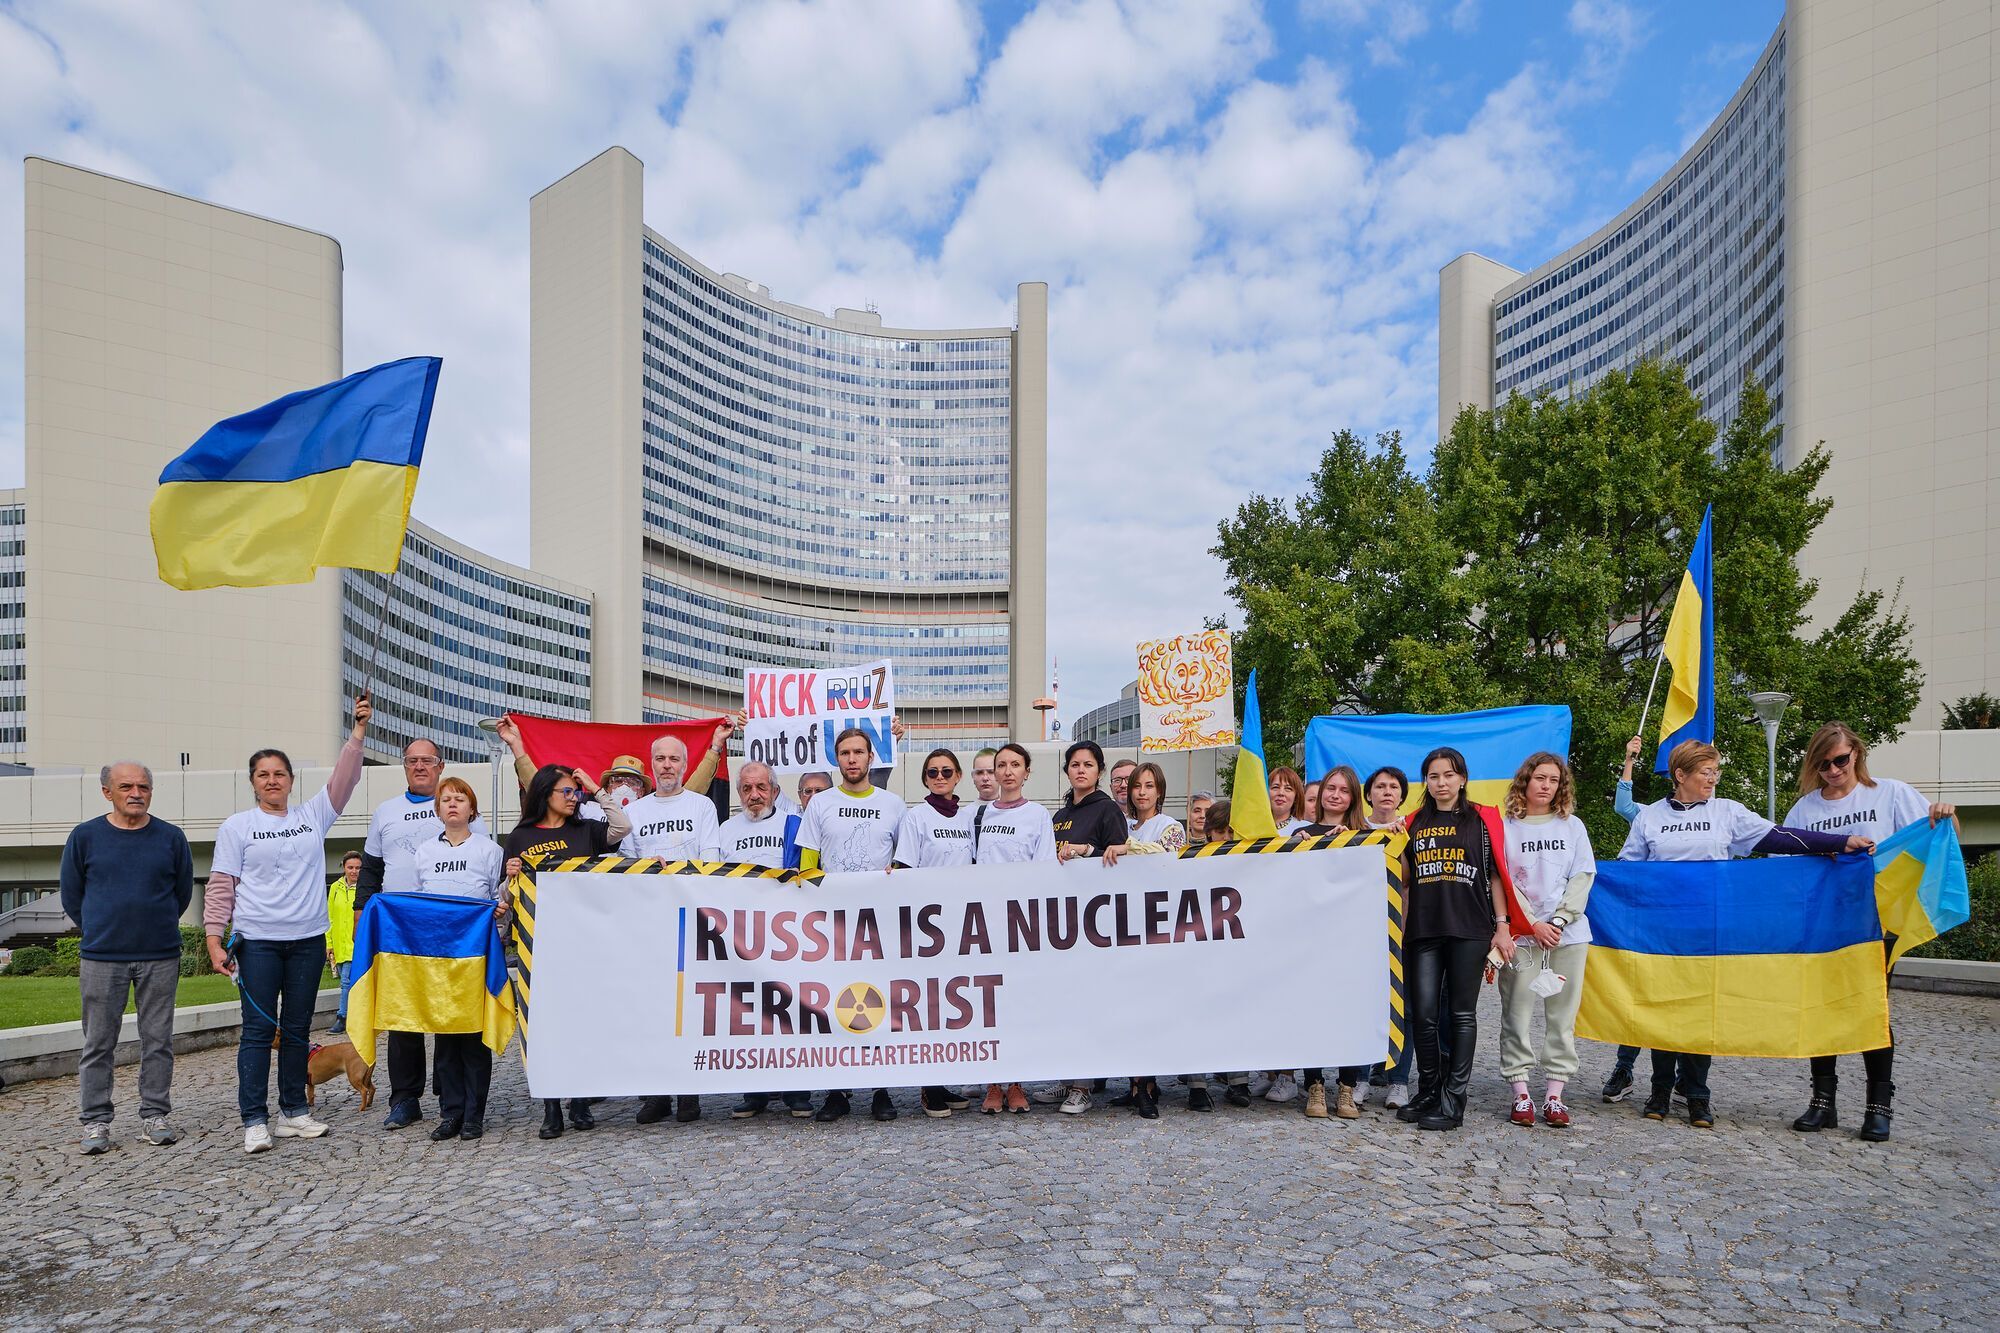 "Вкриті ядерним попелом": у Відні учасники акції проти членства Росії в МАГАТЕ влаштували моторошний перформанс. Фото